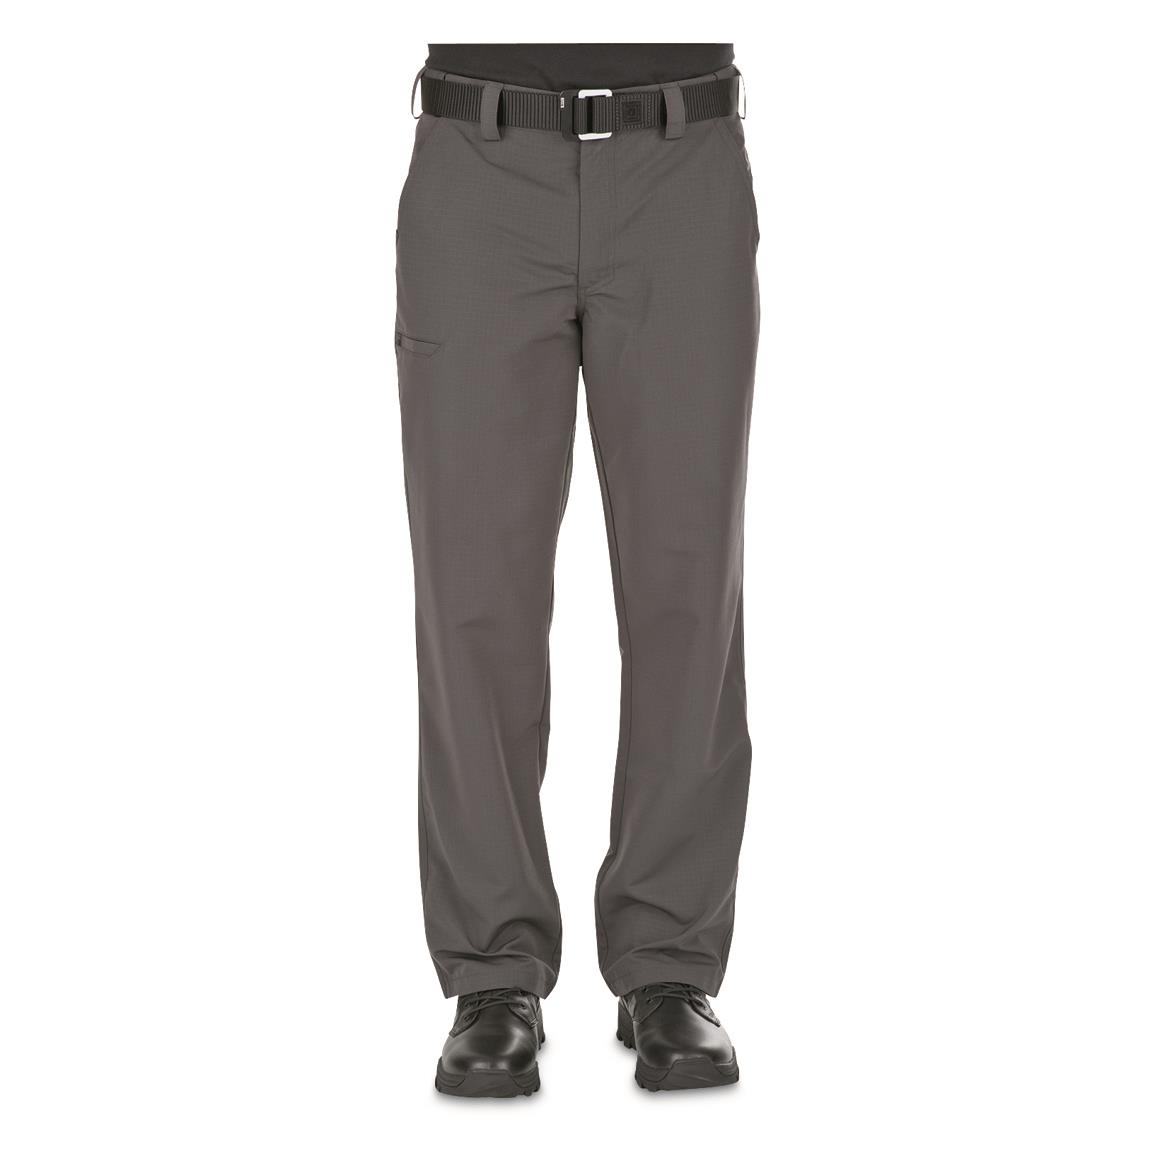 5.11 Tactical Fast-Tac Men's Urban Pants, Charcoal